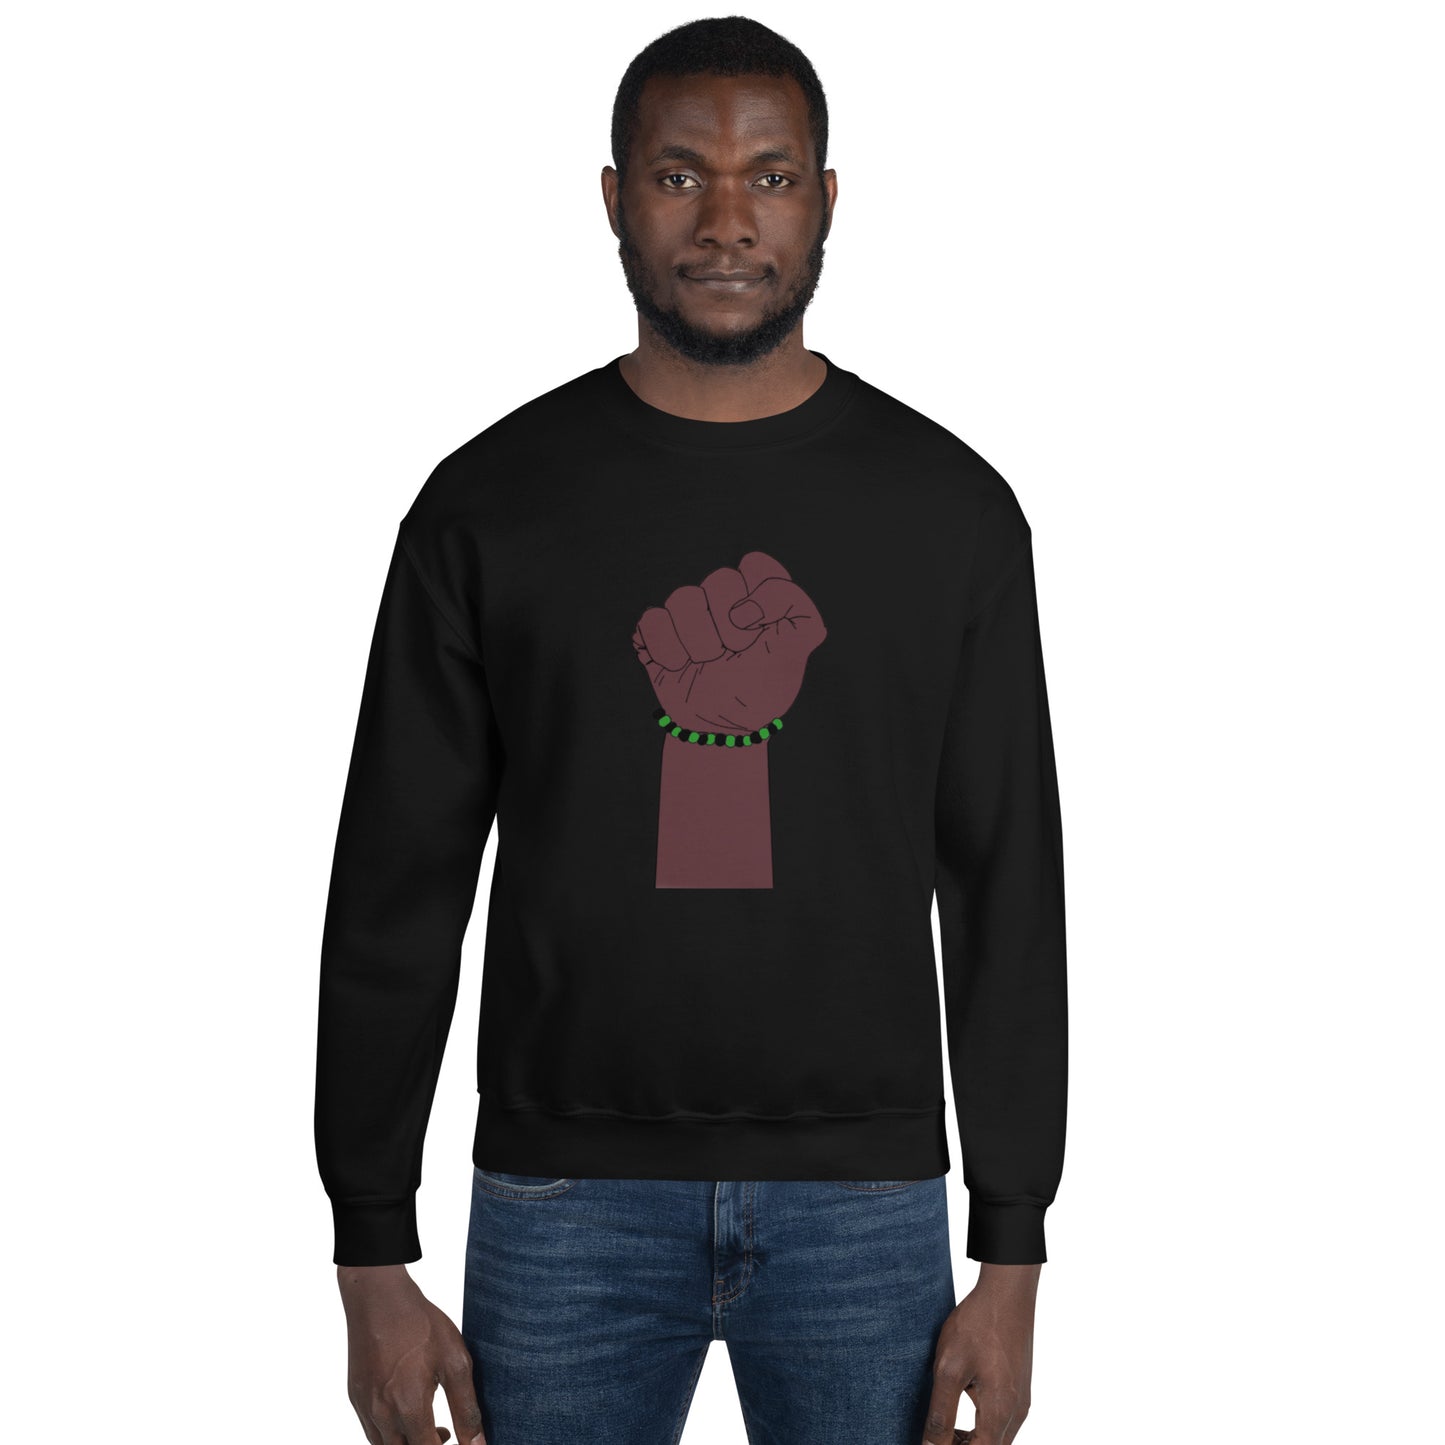 Ogun Men's Ide Sweatshirt